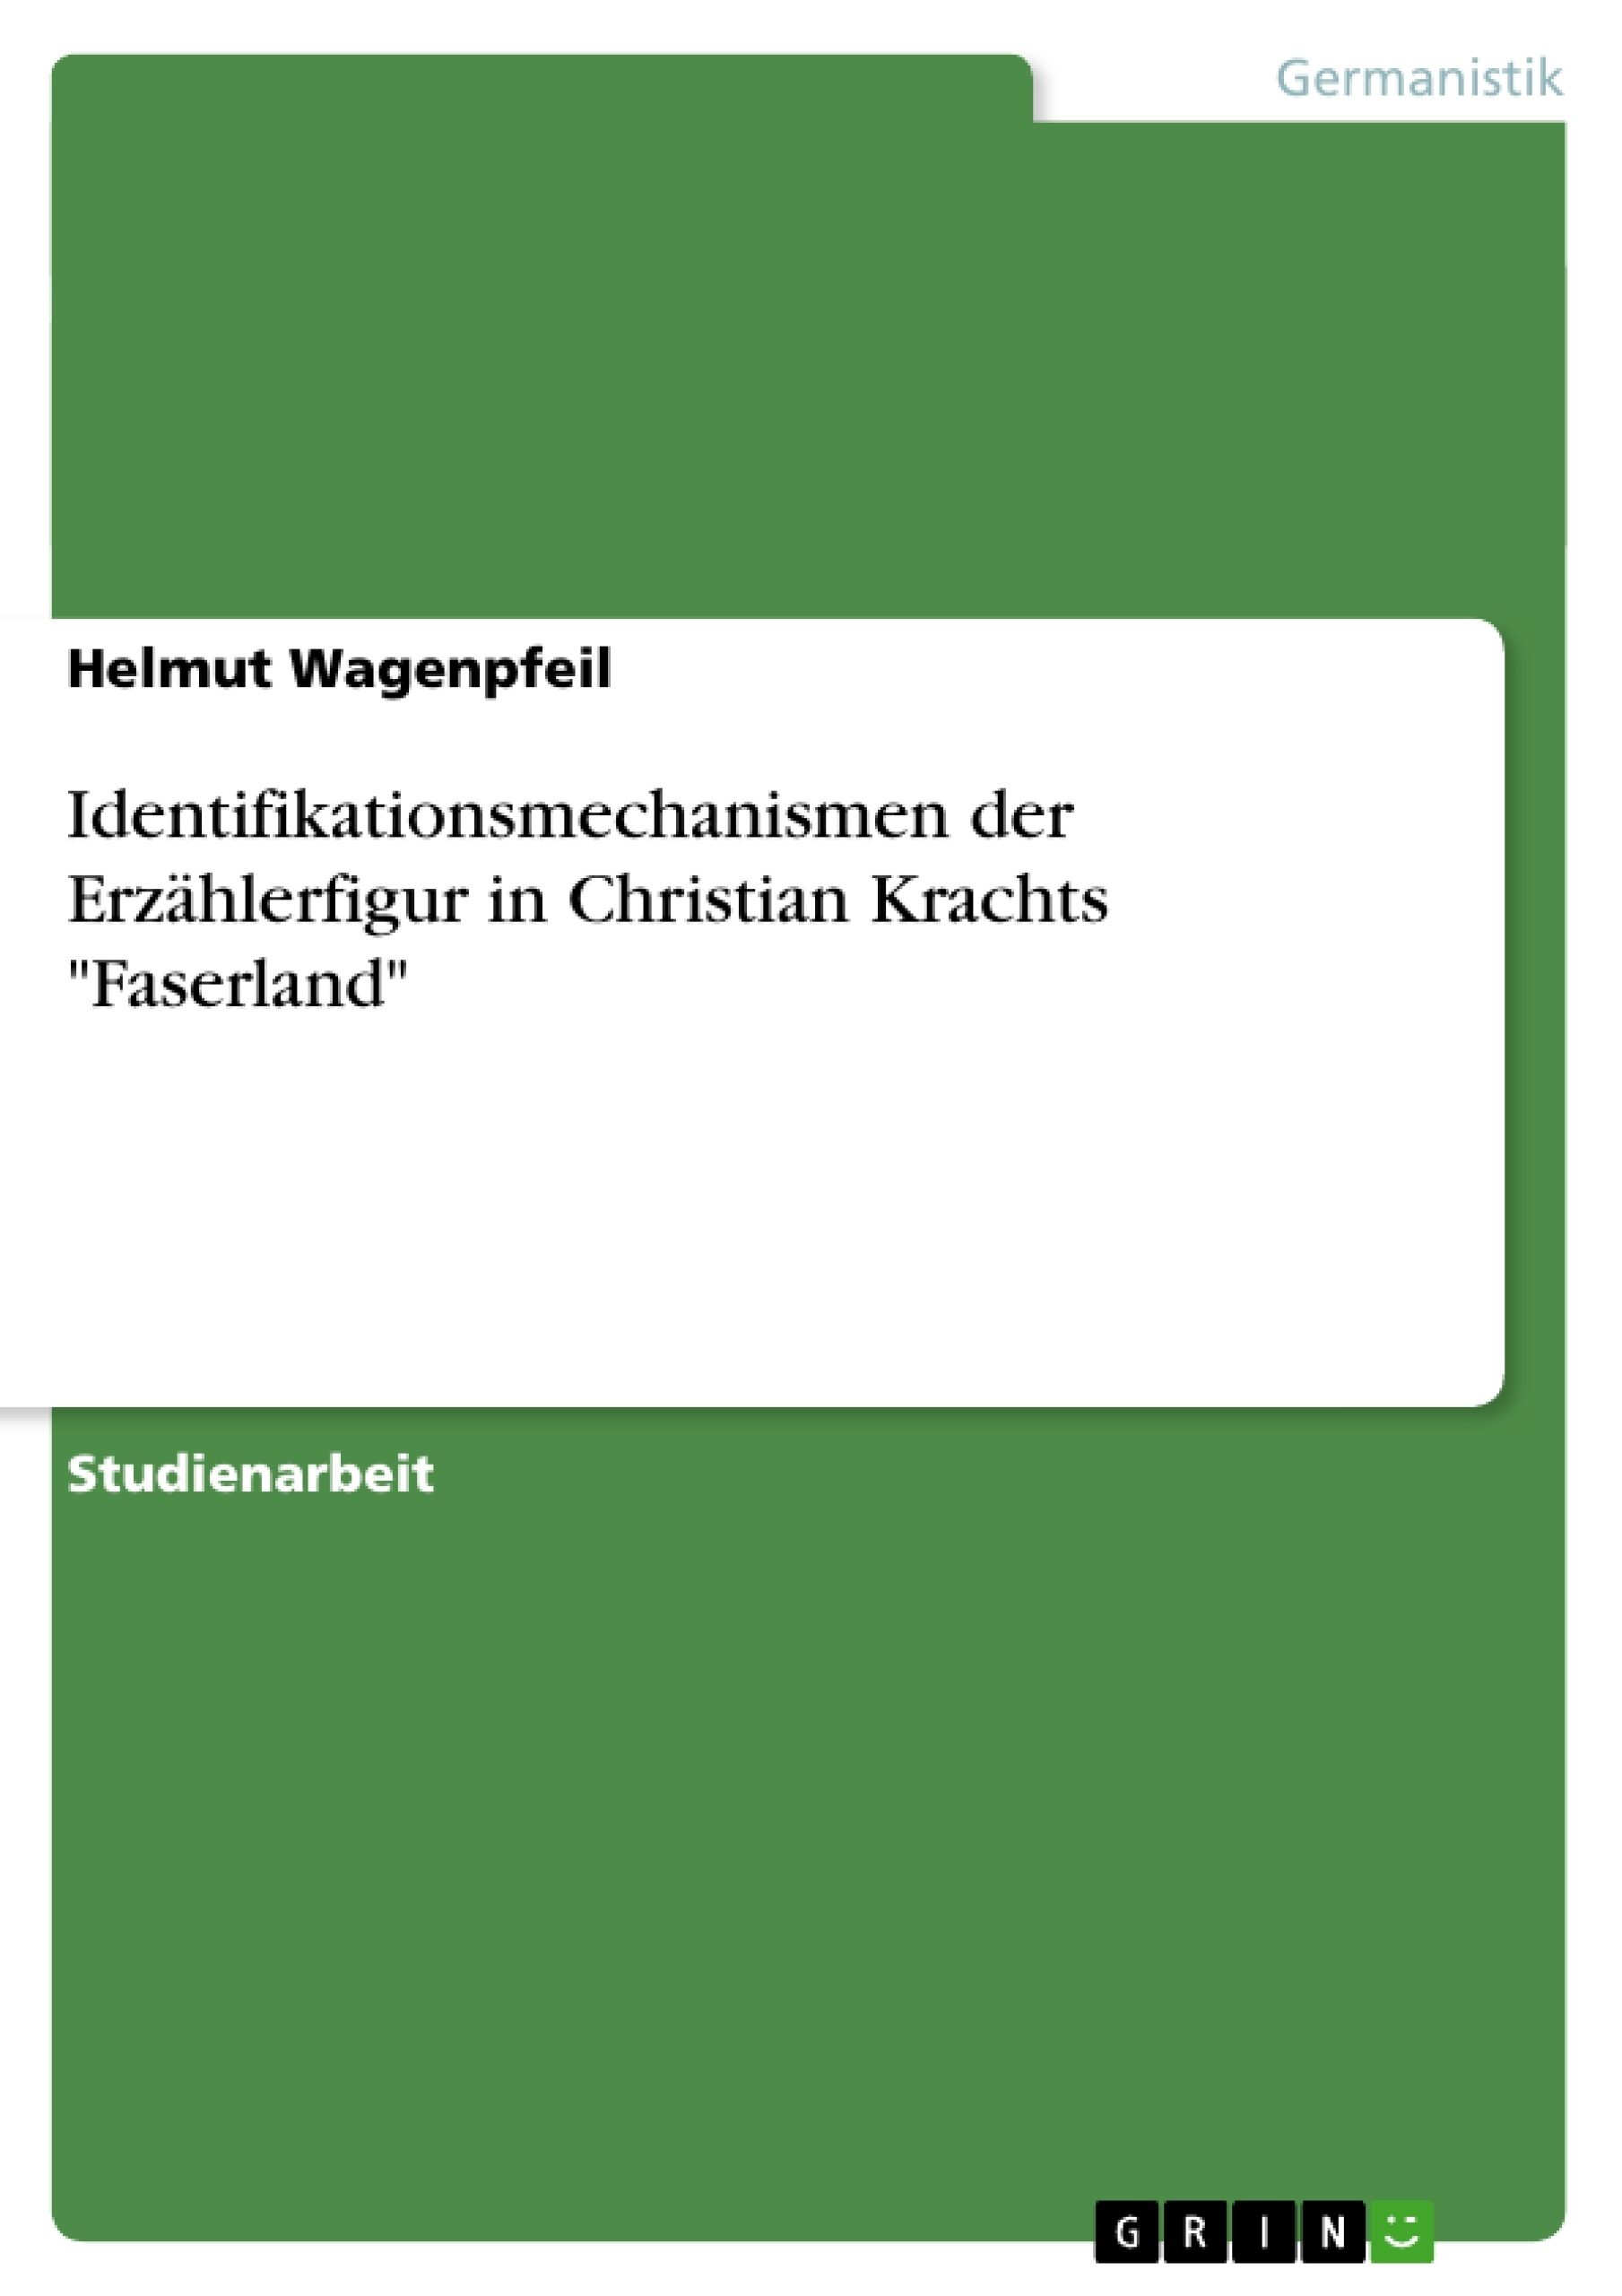 Title: Identifikationsmechanismen der Erzählerfigur in Christian Krachts "Faserland"